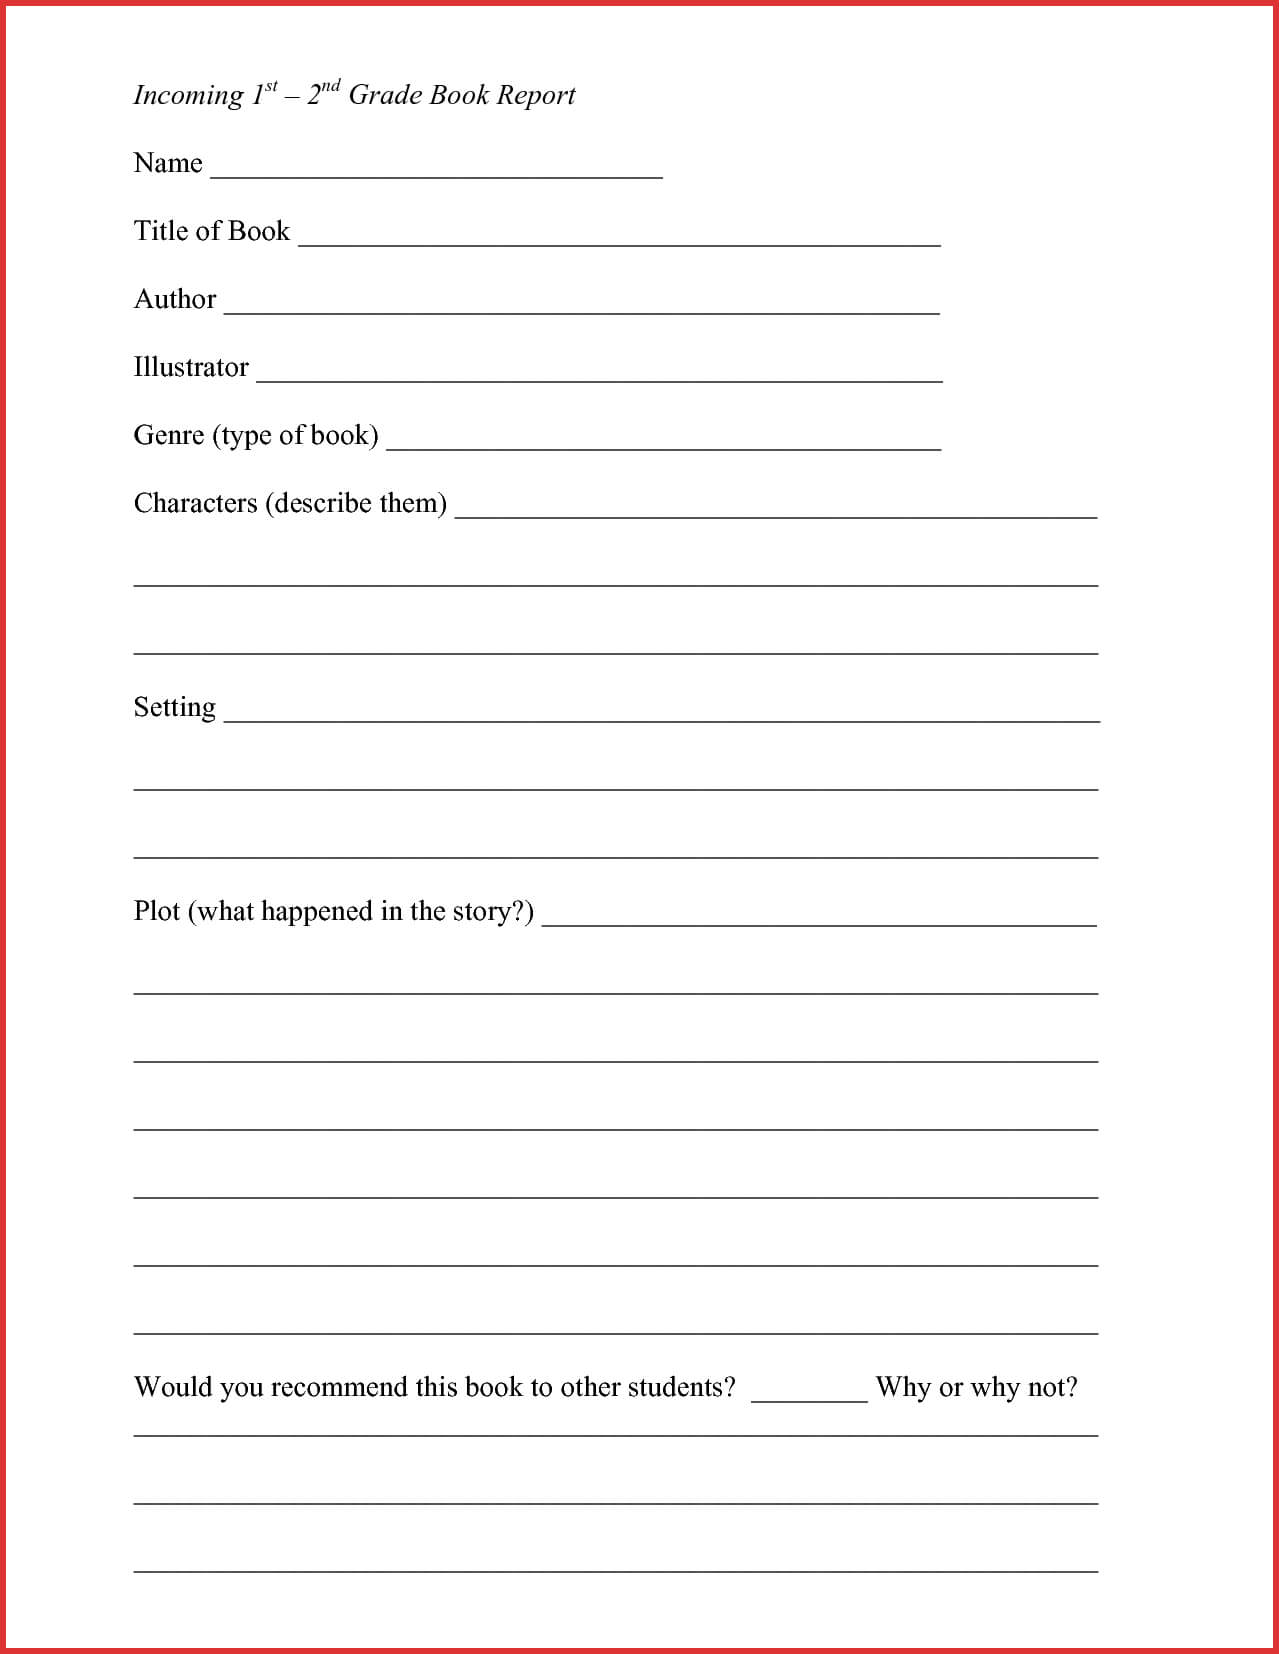 Lovely 2Nd Grade Book Report Template | Job Latter Regarding 2Nd Grade Book Report Template